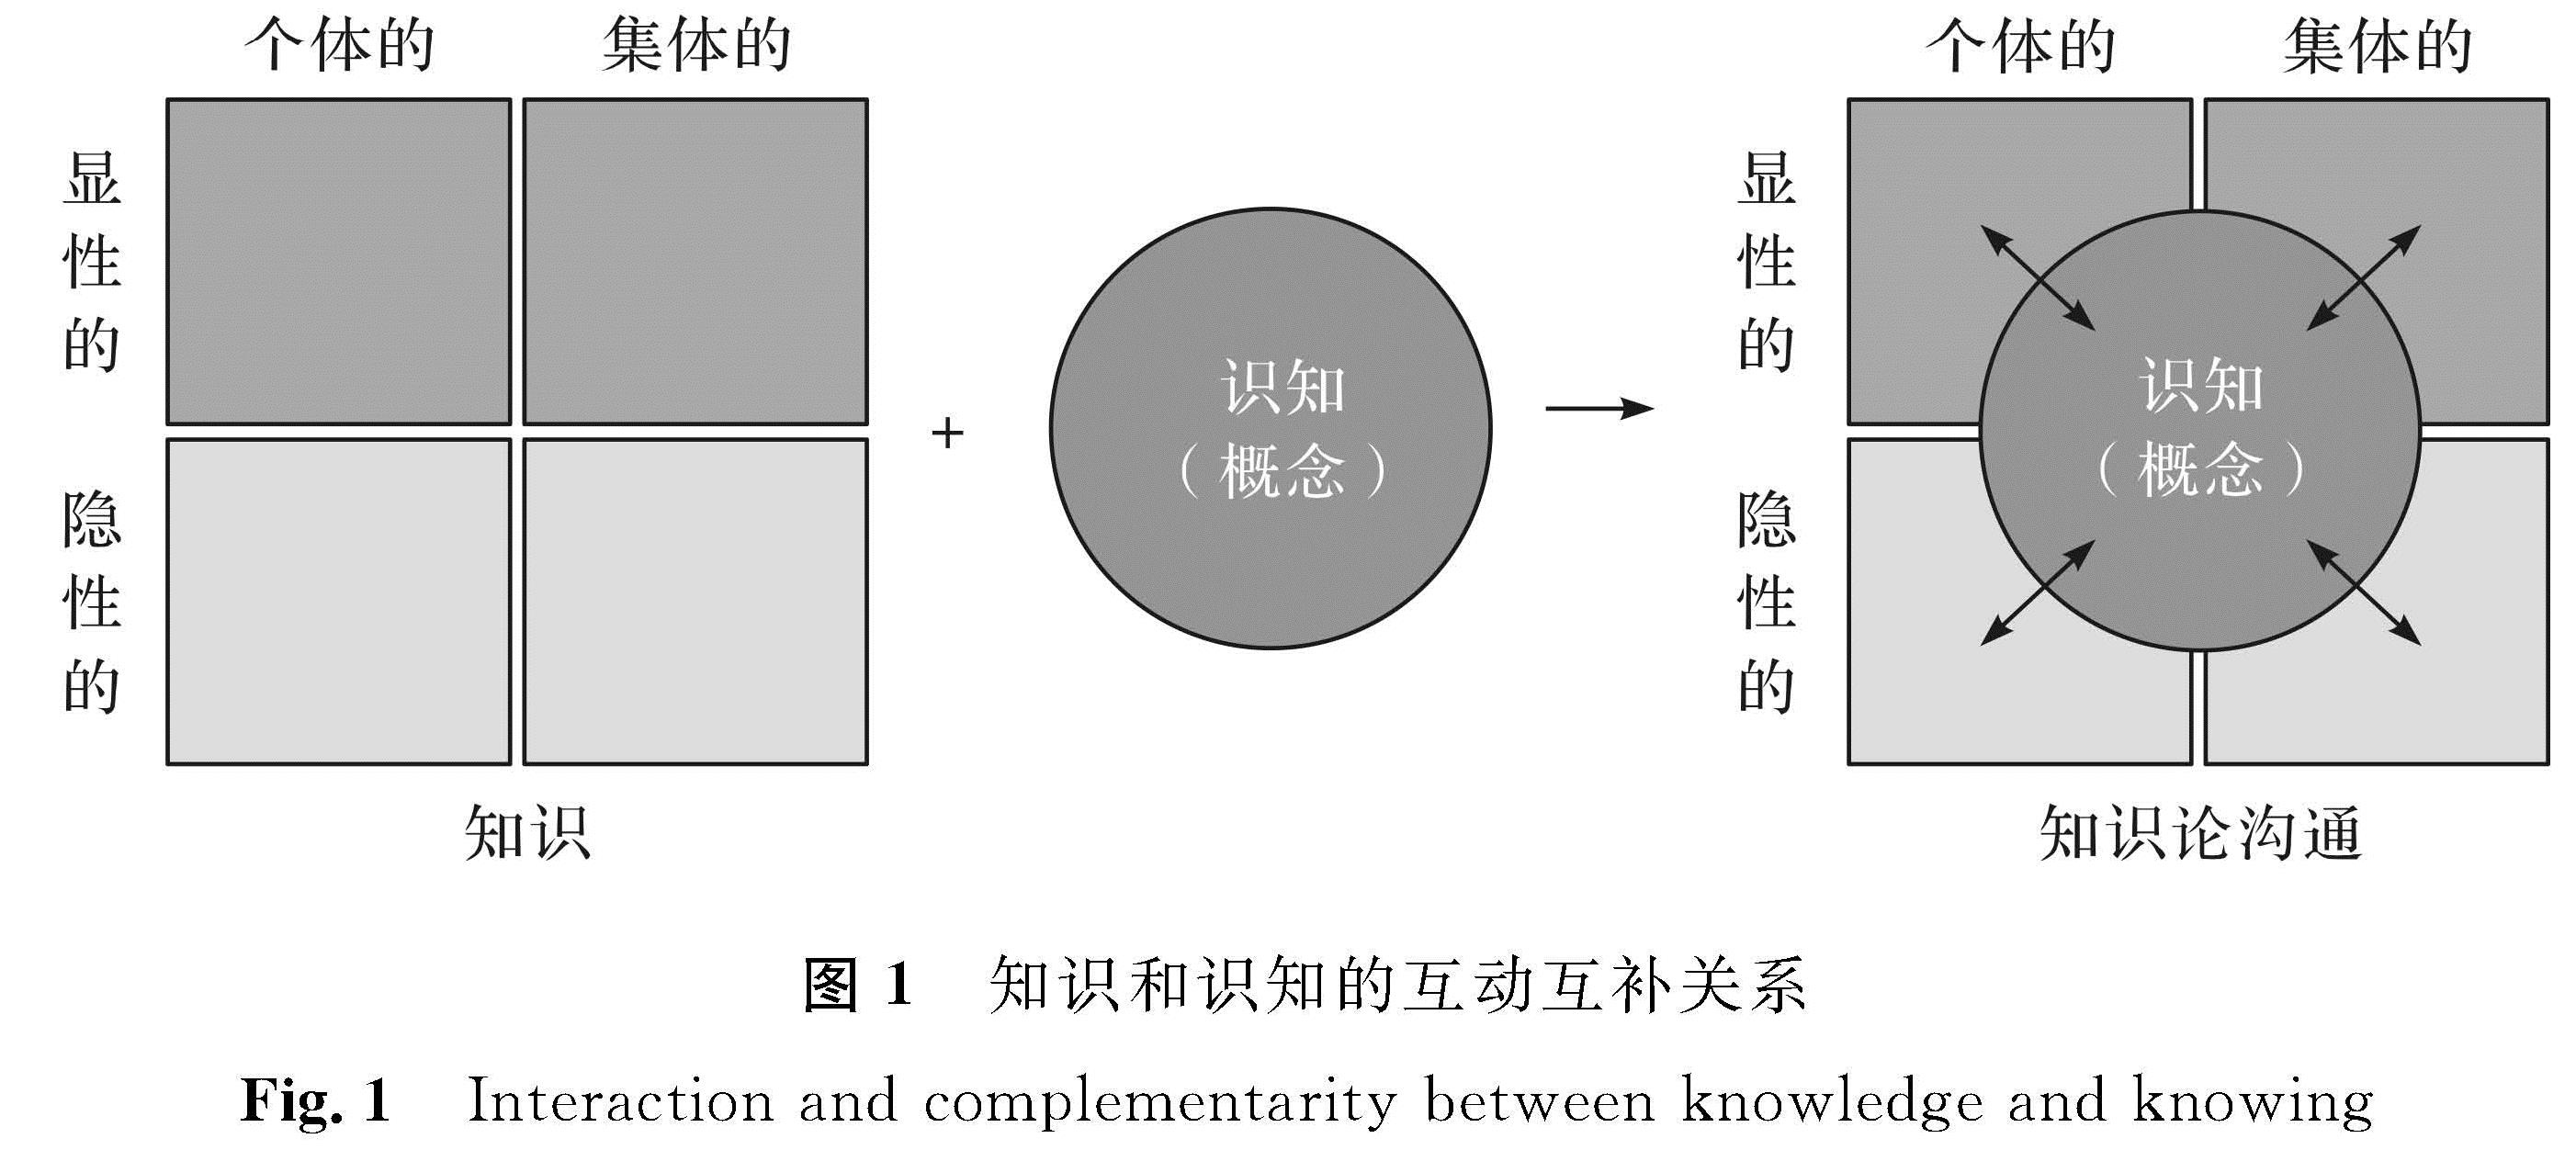 图1 知识和识知的互动互补关系<br/>Fig.1 Interaction and complementarity between knowledge and knowing